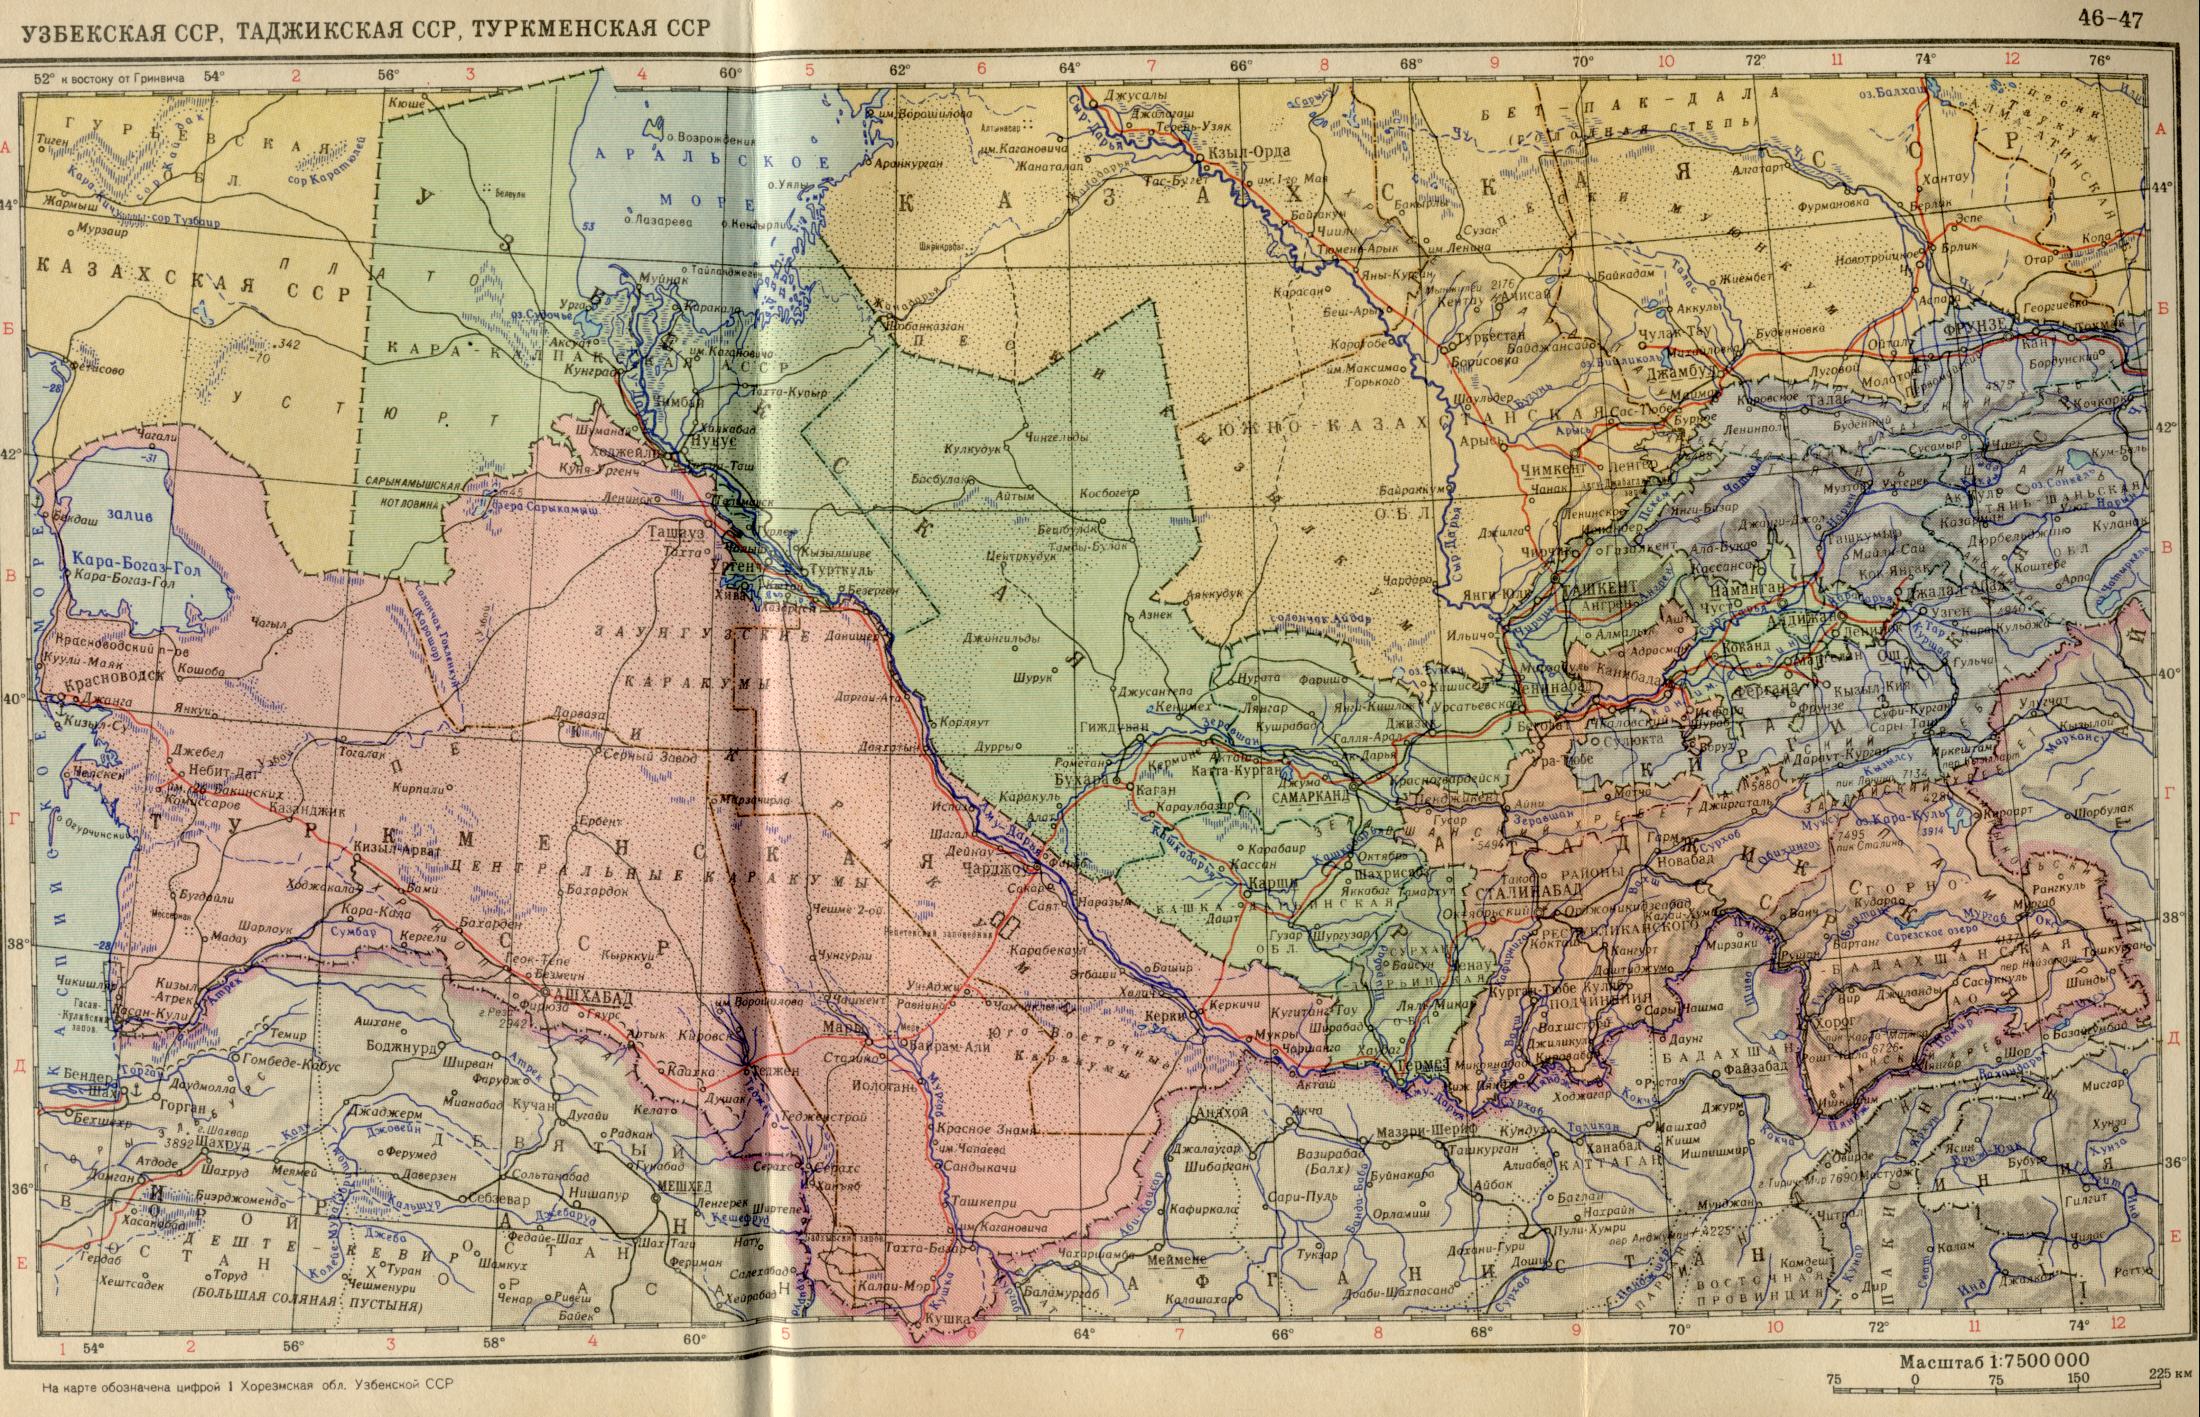 1956. La carte politique du monde. RSS d'Ouzbékistan, du Tadjikistan SSR, Turkmen SSR en 1956. Télécharger une carte détaillée